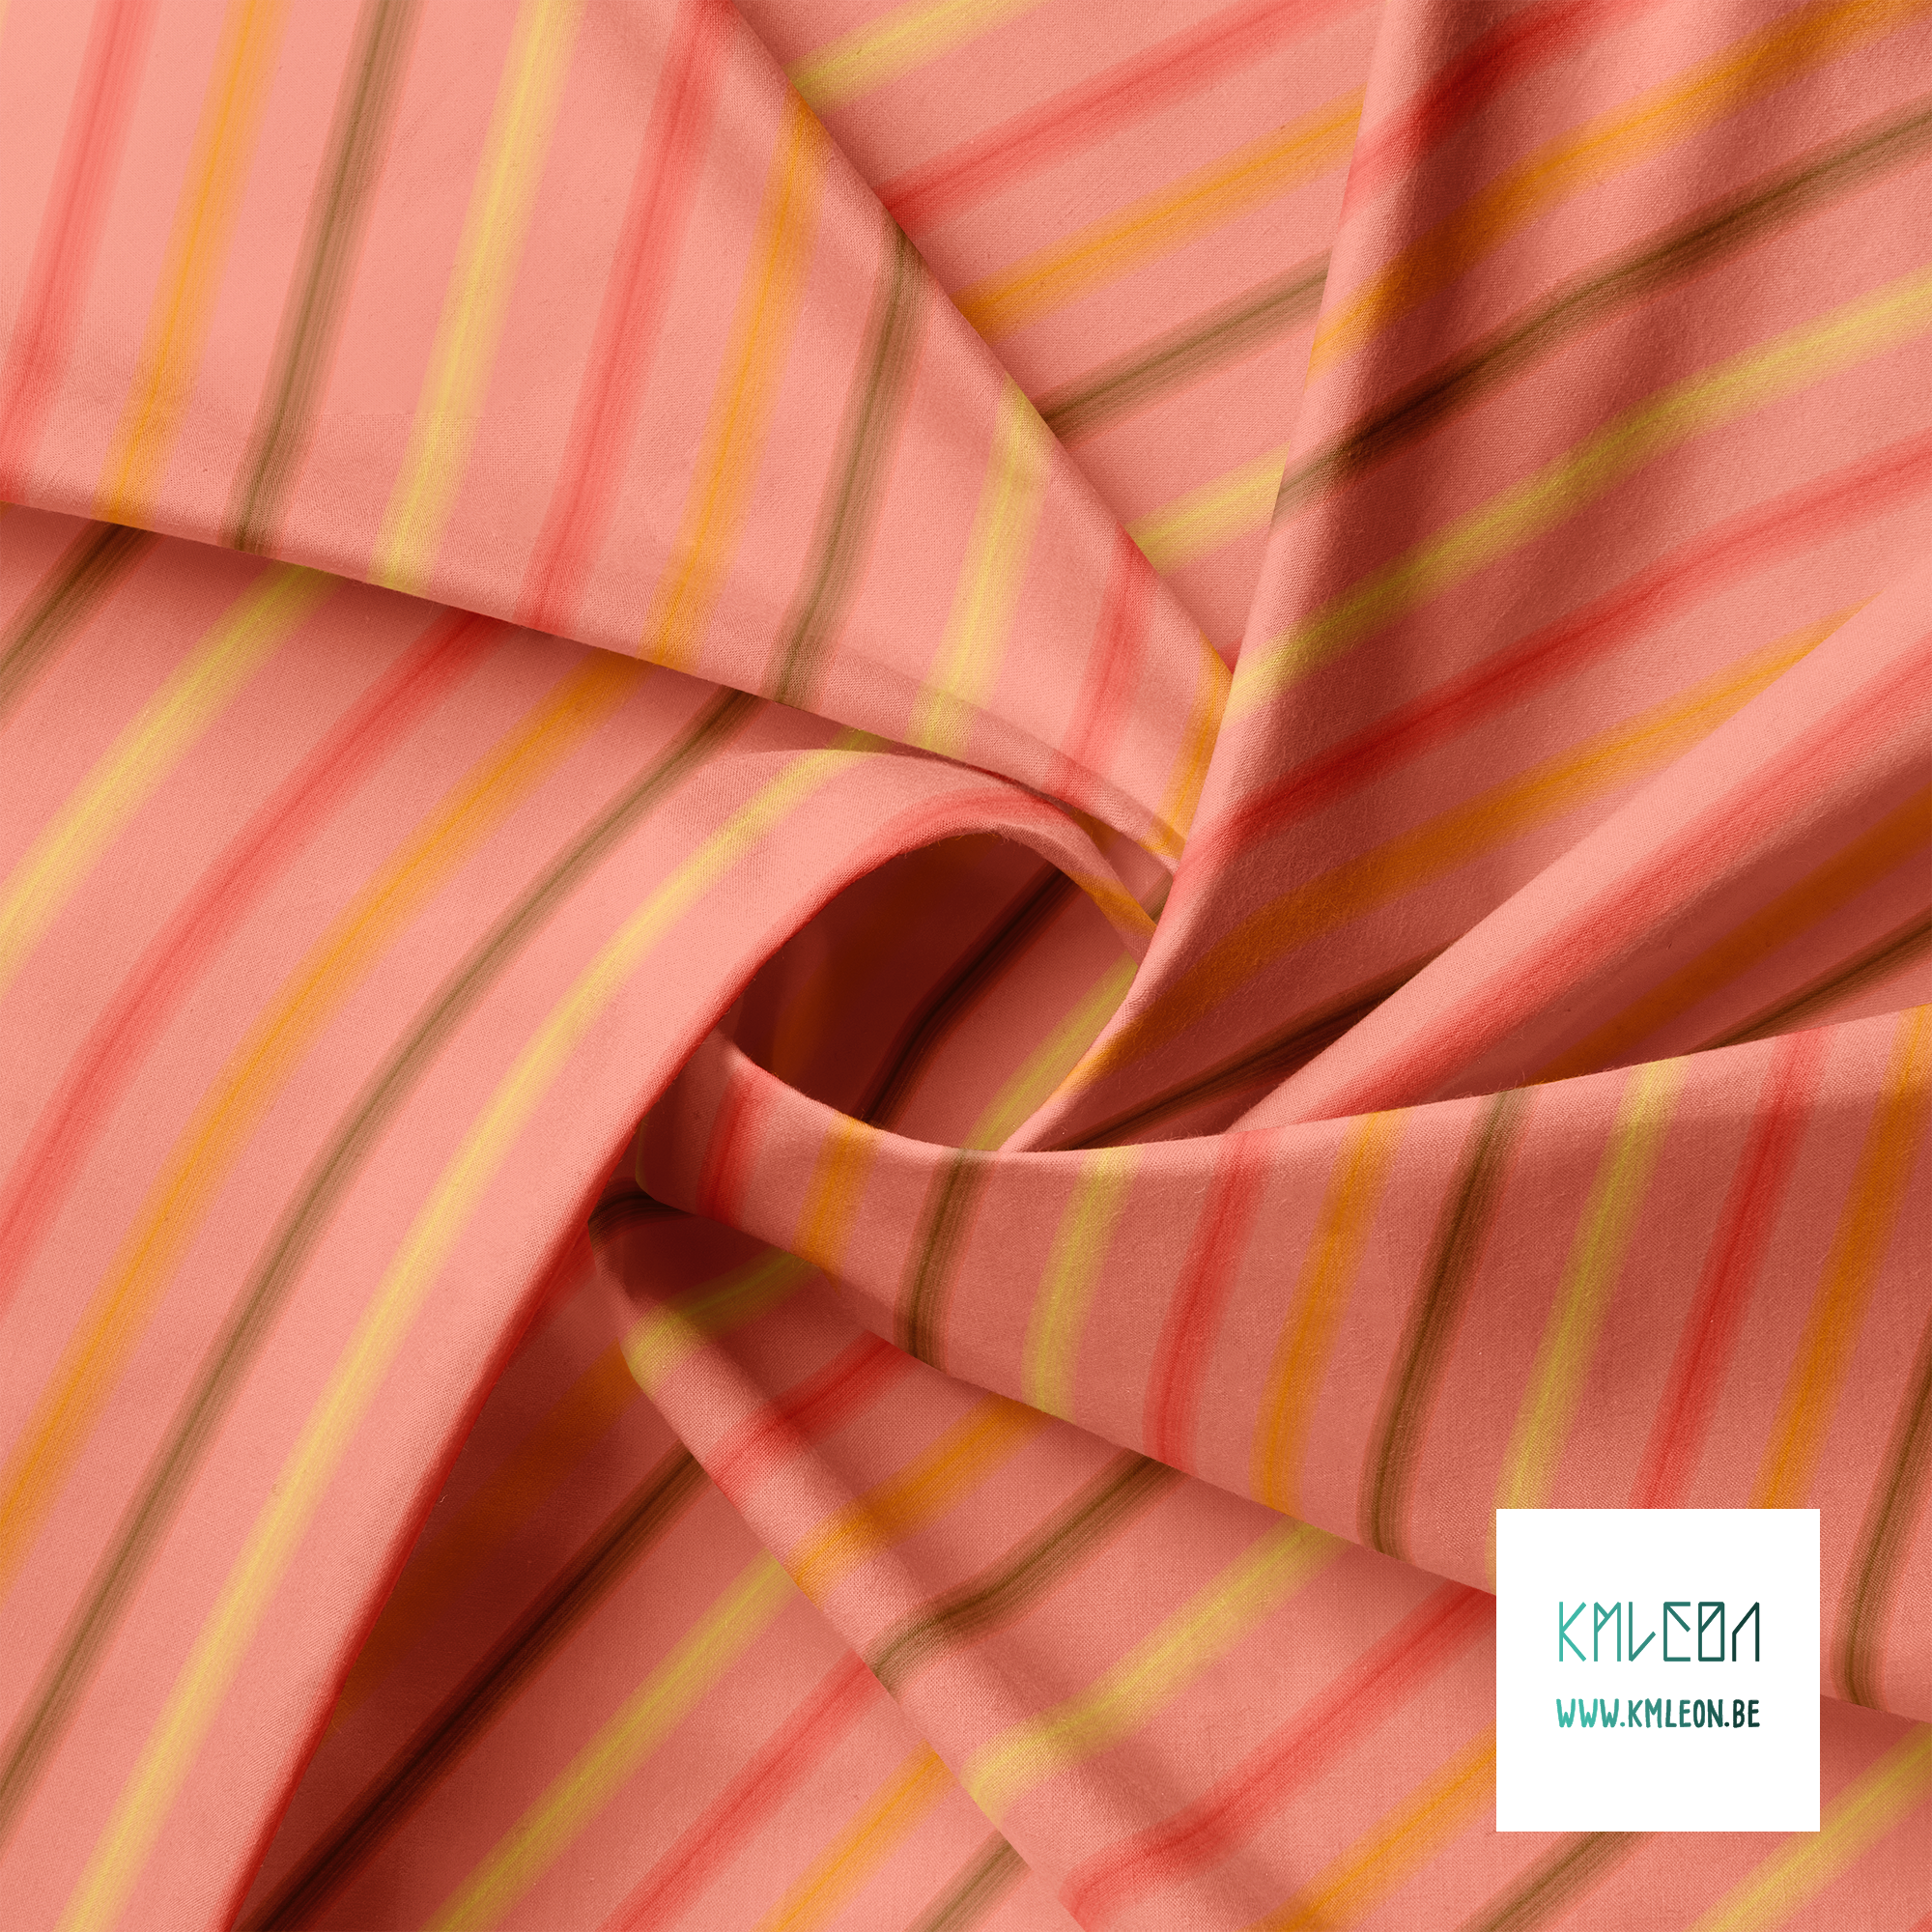 Zachte horizontale strepen in rood, geel, oranje en bruin stof